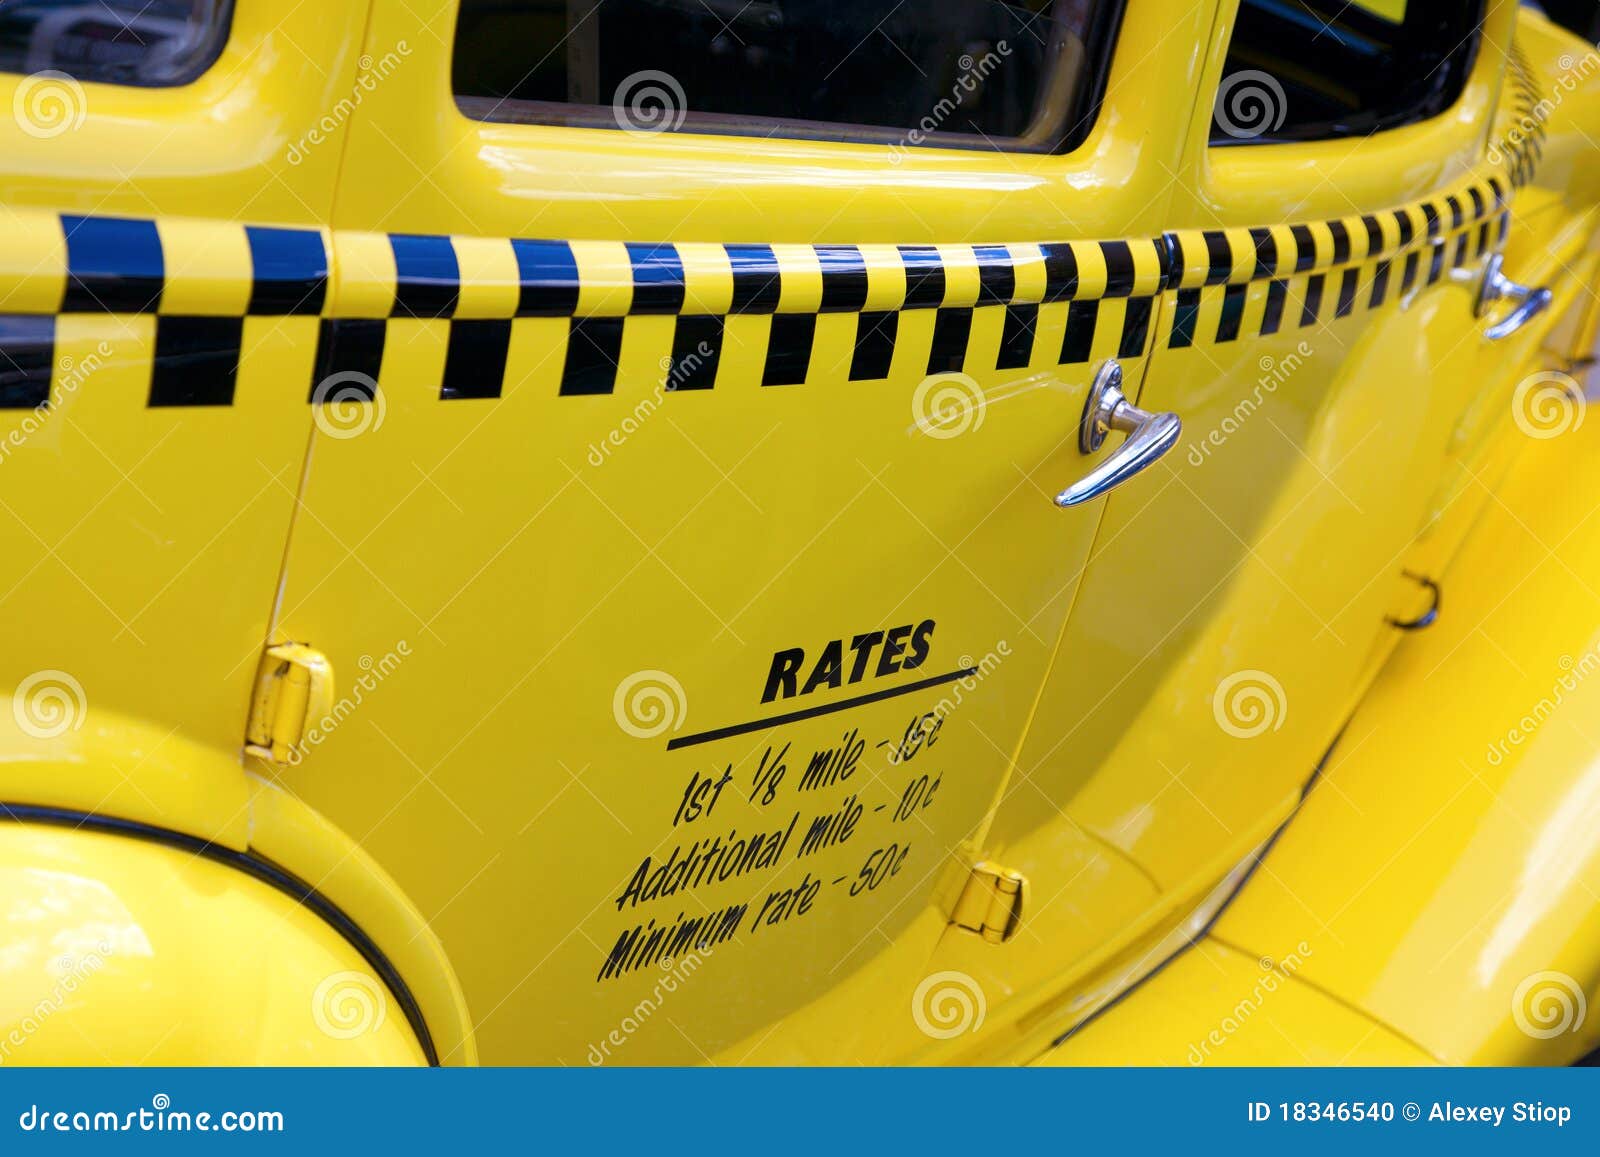 auburn taxi cab